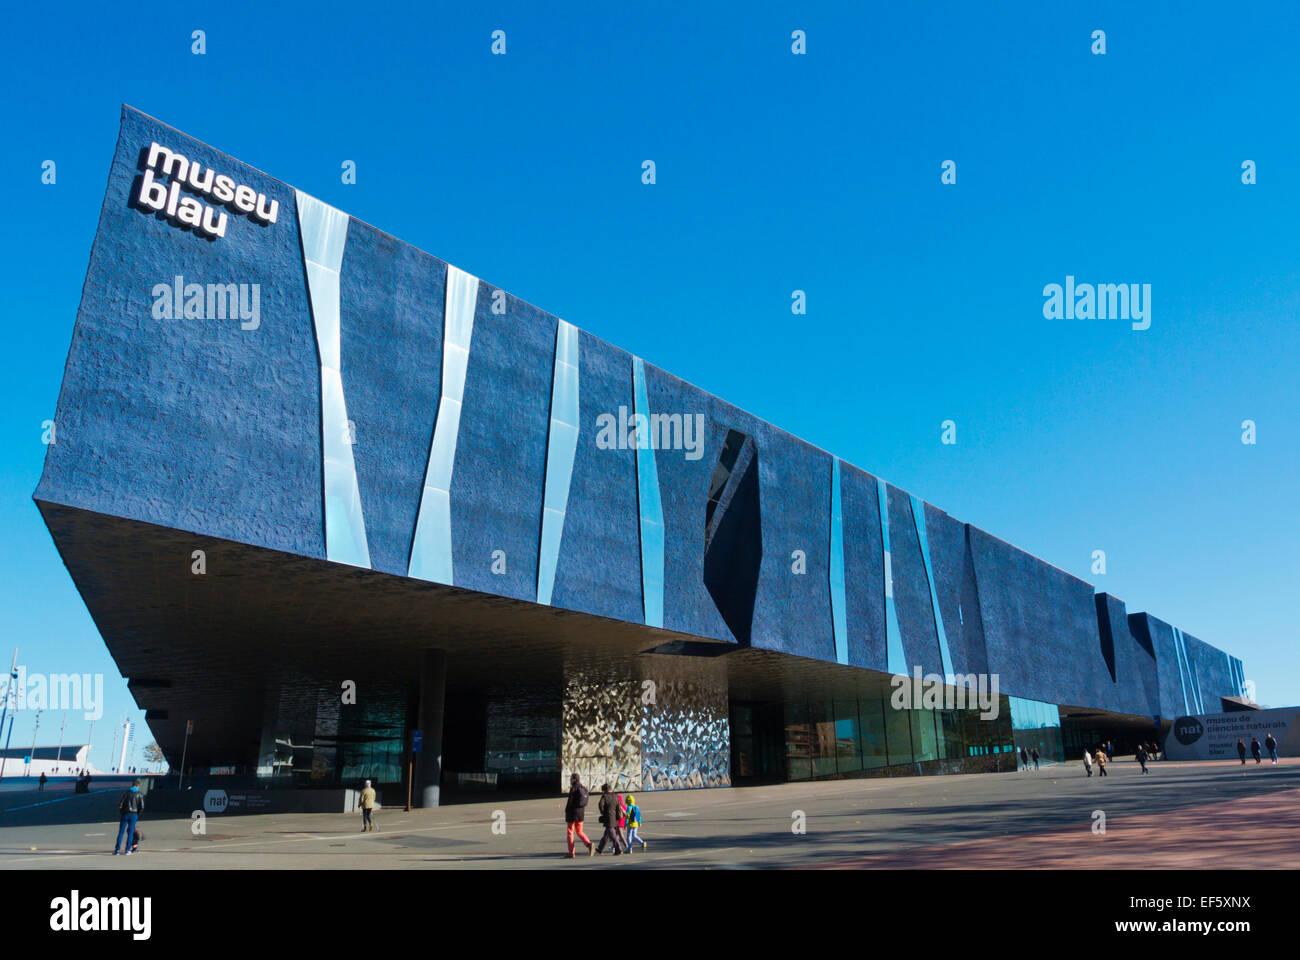 Museo Blau, natural history museum, Parc de la Forum, Barcelona, Spain Stock Photo